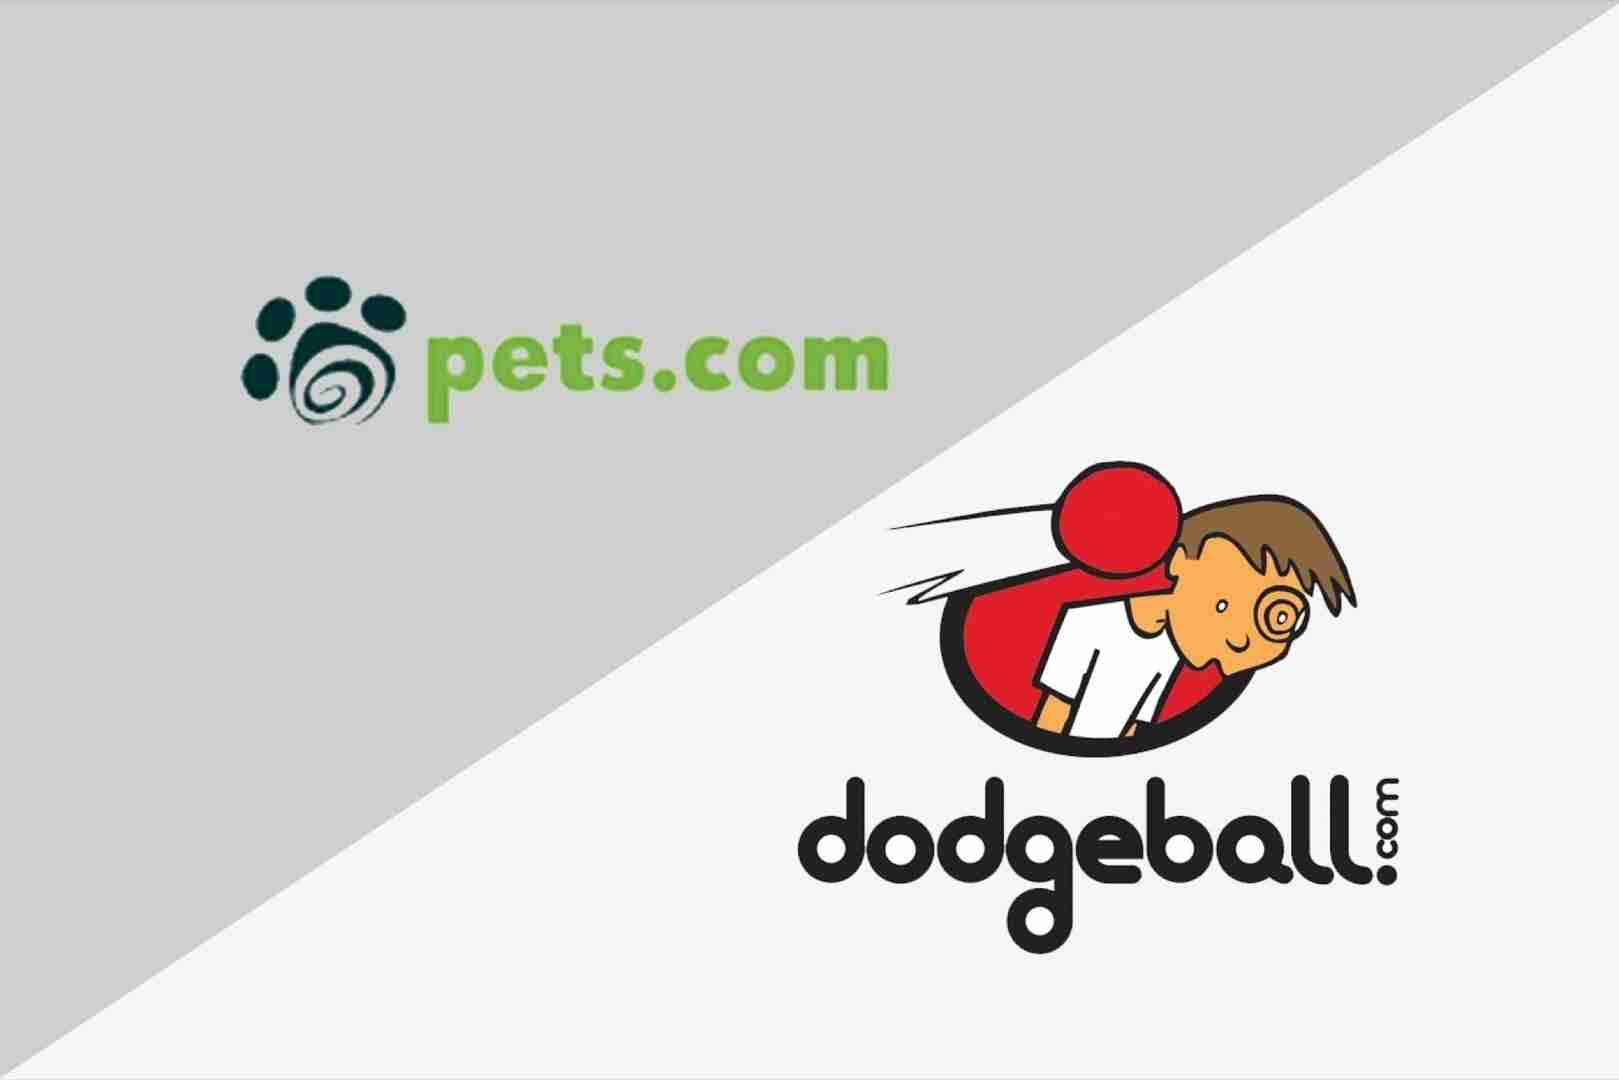 糟糕的时机伤害了Pets.com。Dodgeball.com没有战略计划。注意启动陷阱的游行。